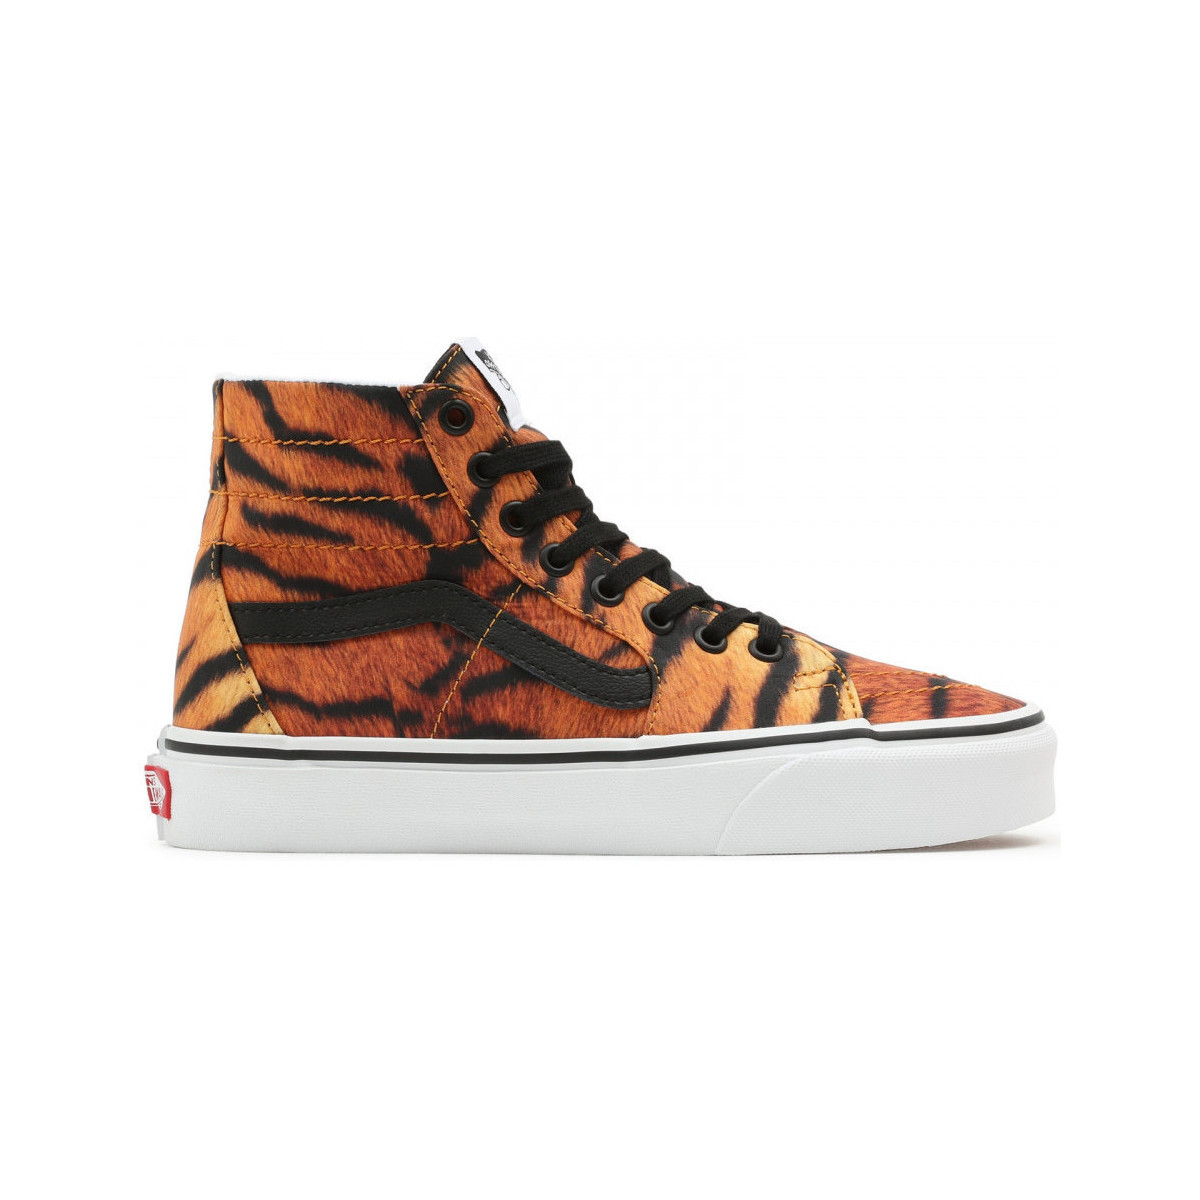 Παπούτσια Skate Παπούτσια Vans Sk8-hi tapered Orange